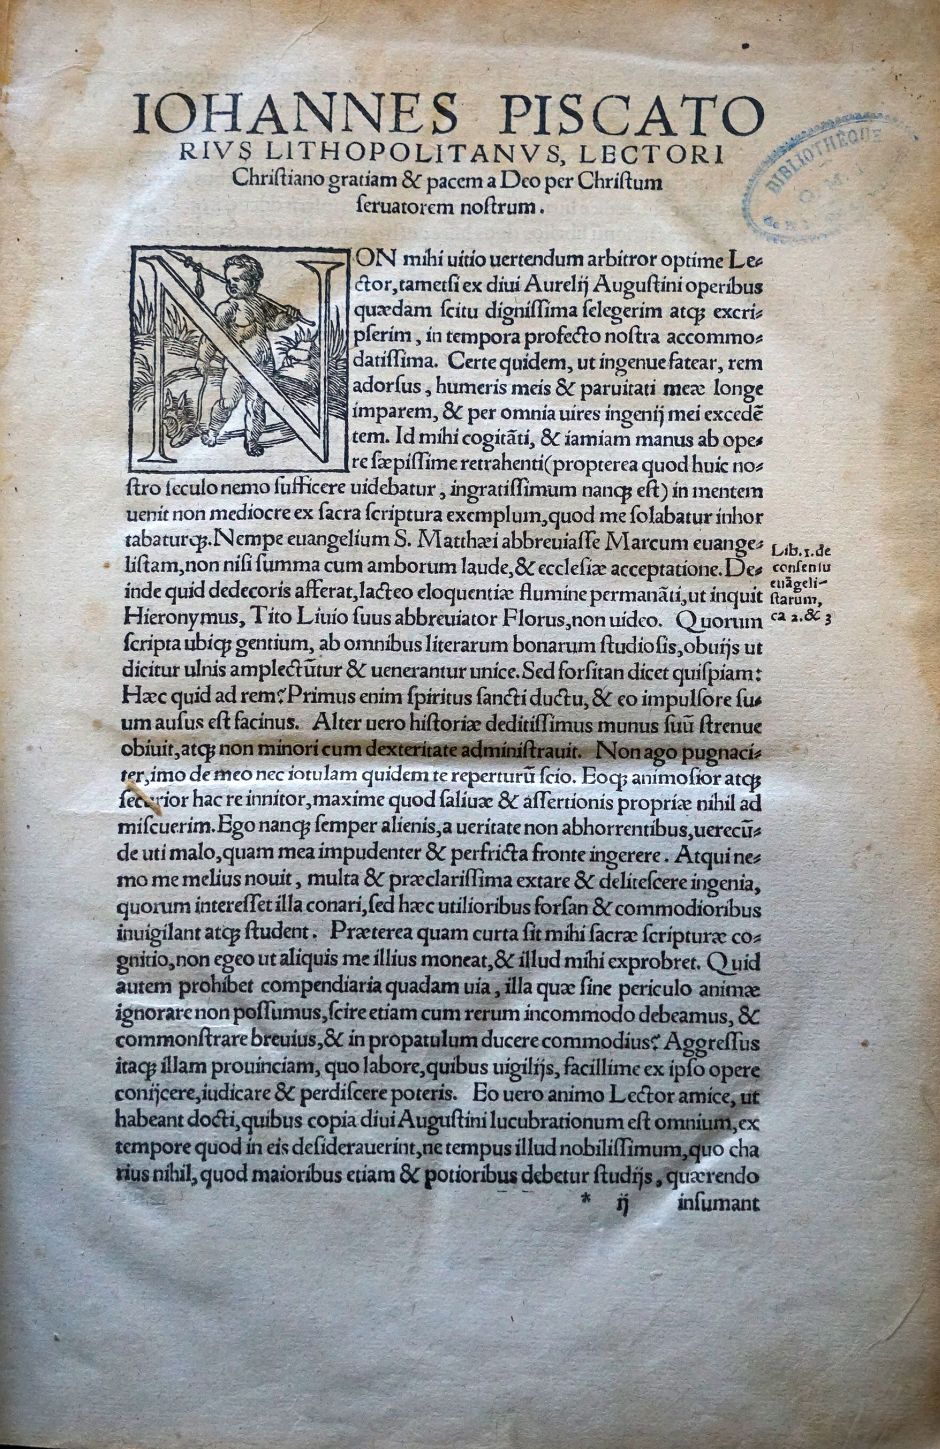 Lot 1050, Auction  115, Augustinus, Aurelius, Omnium operum